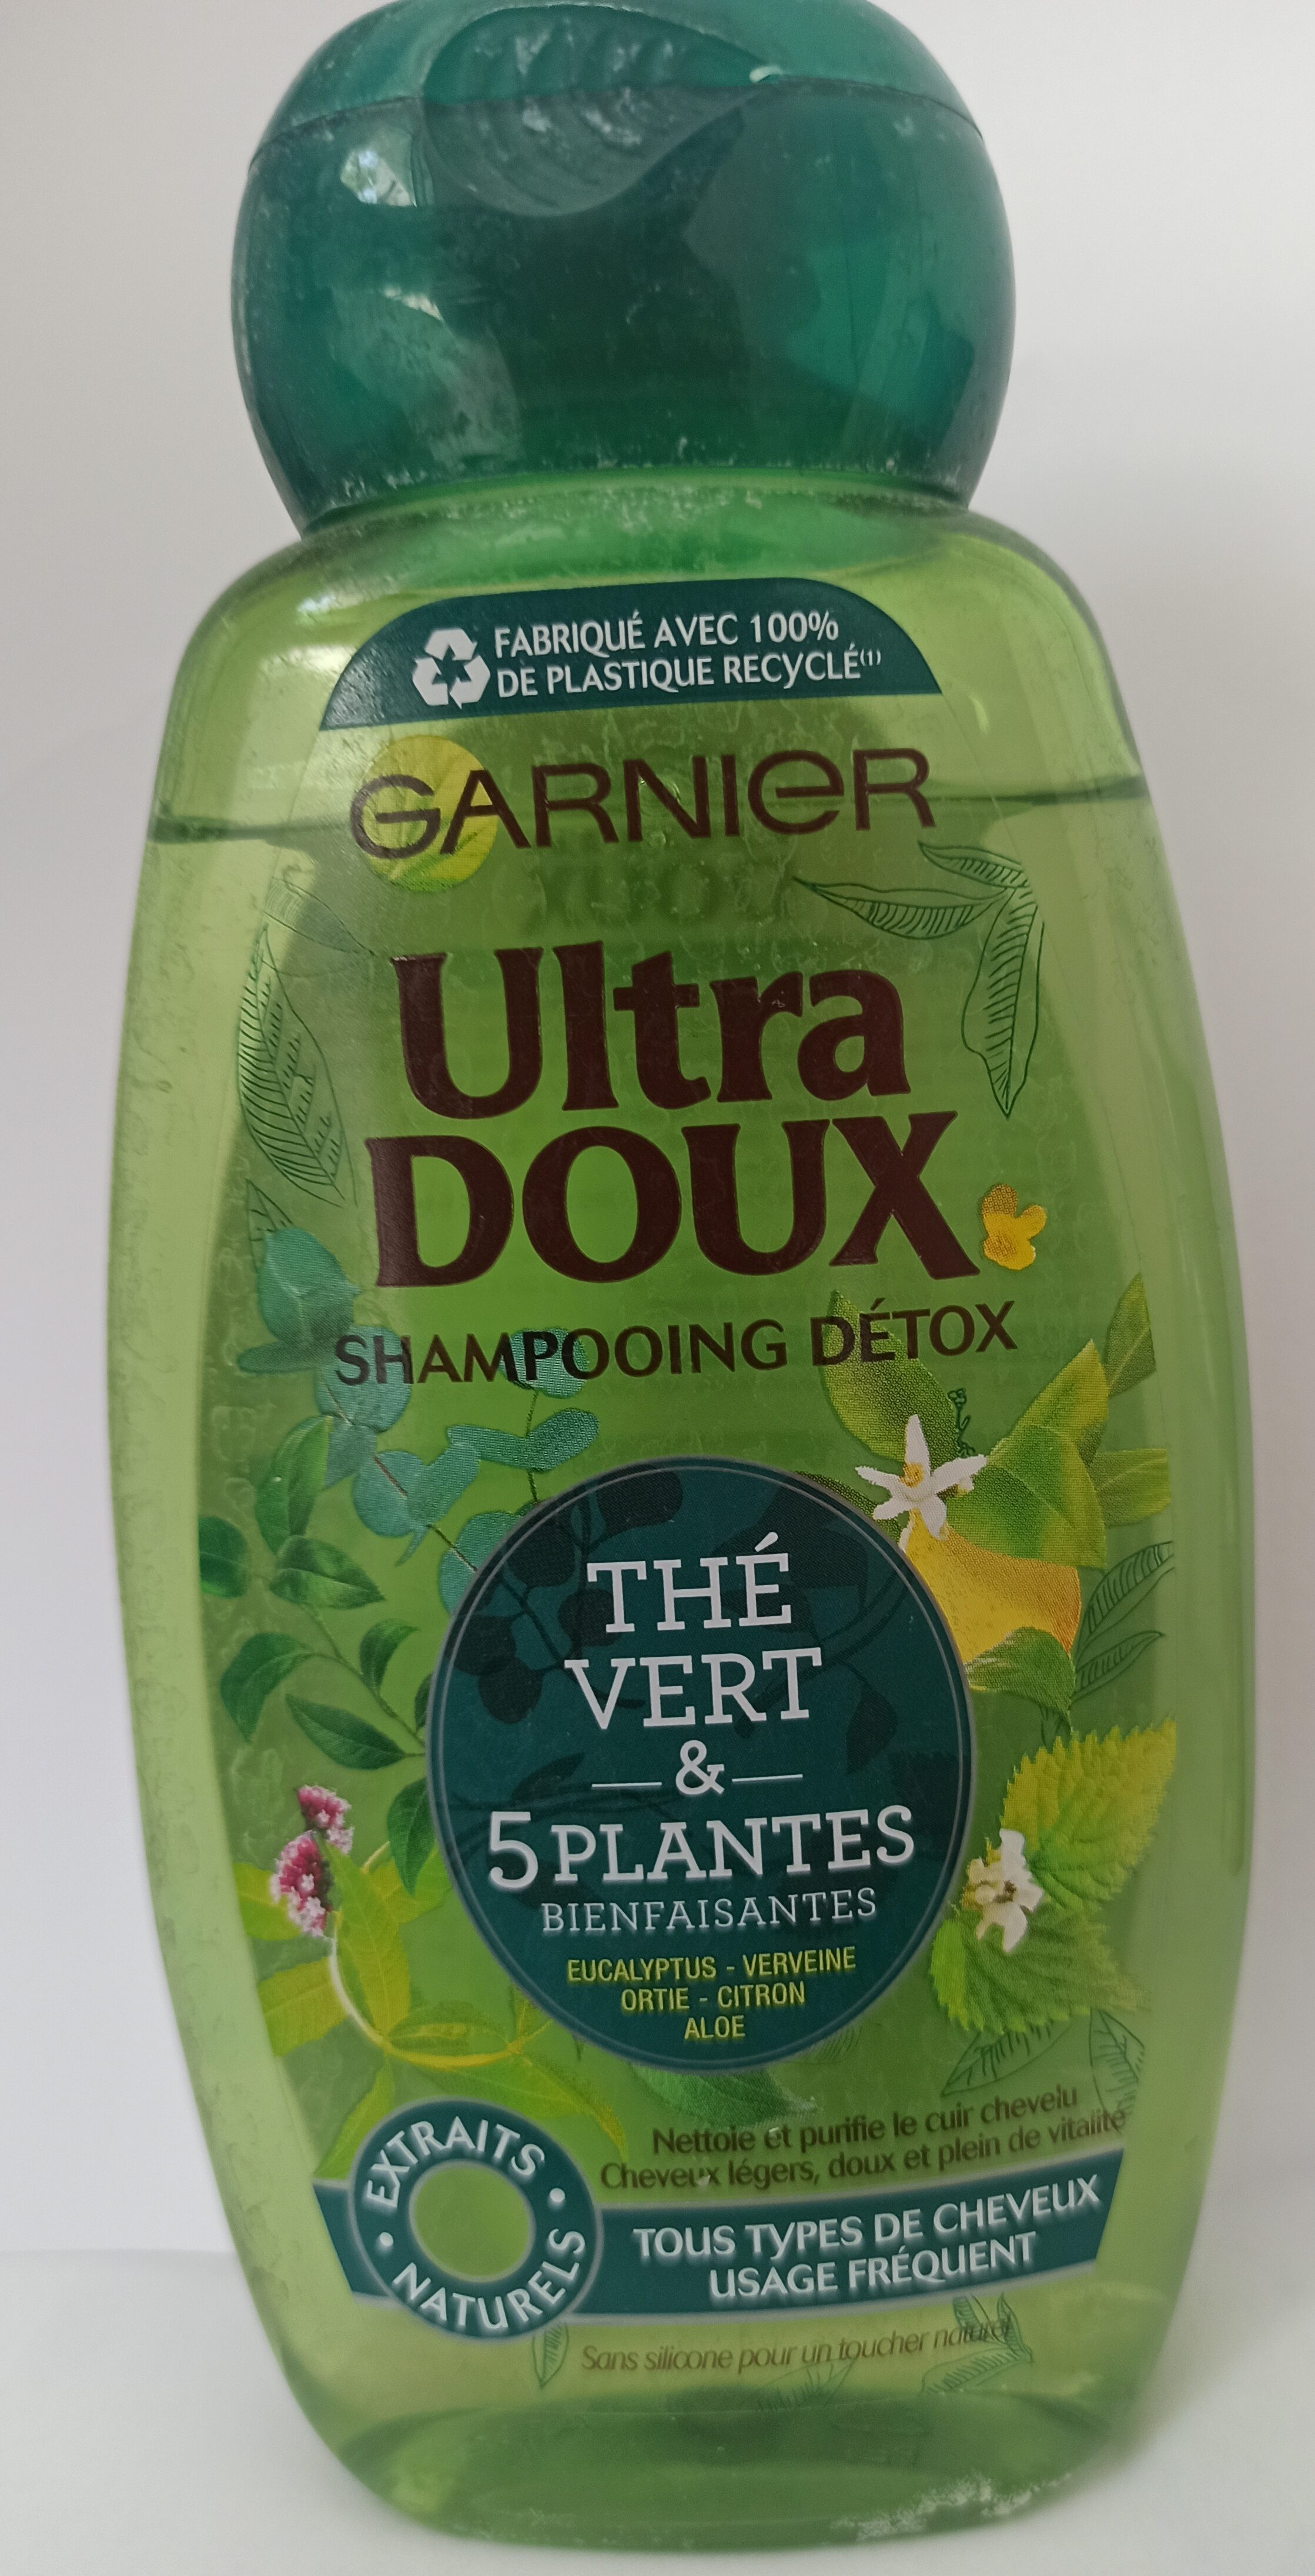 Garnier Ultra Doux Shampooing Détox Thé Vert et 5 Plantes Bienfaisantes - Product - fr